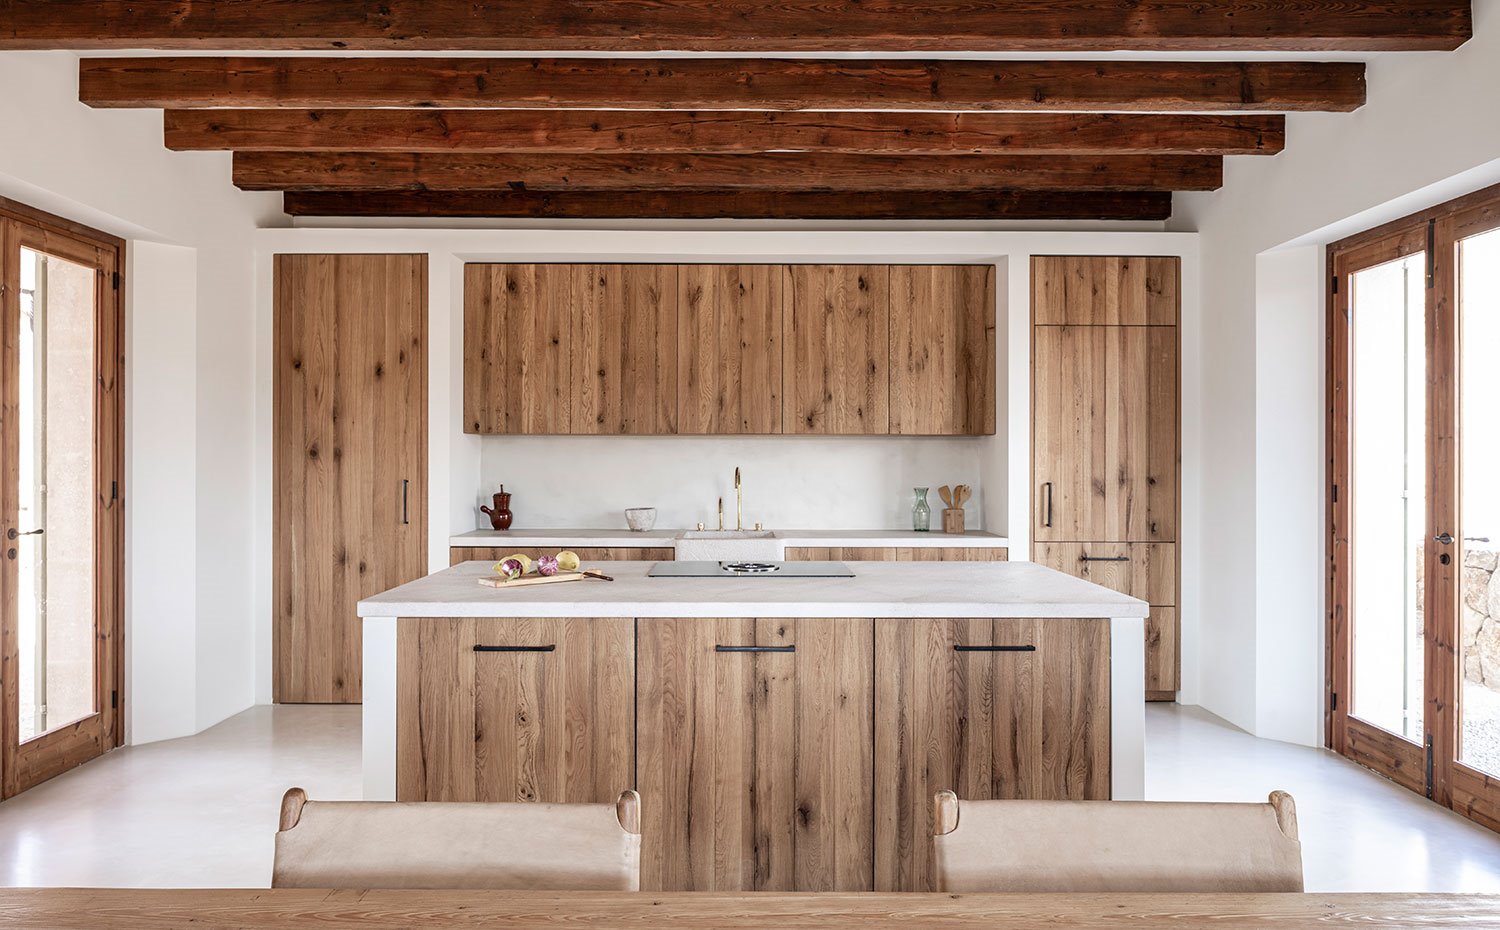 Cocina de madera hecha a medida, encimera en blanco, isla de trabajo, vigas en techo